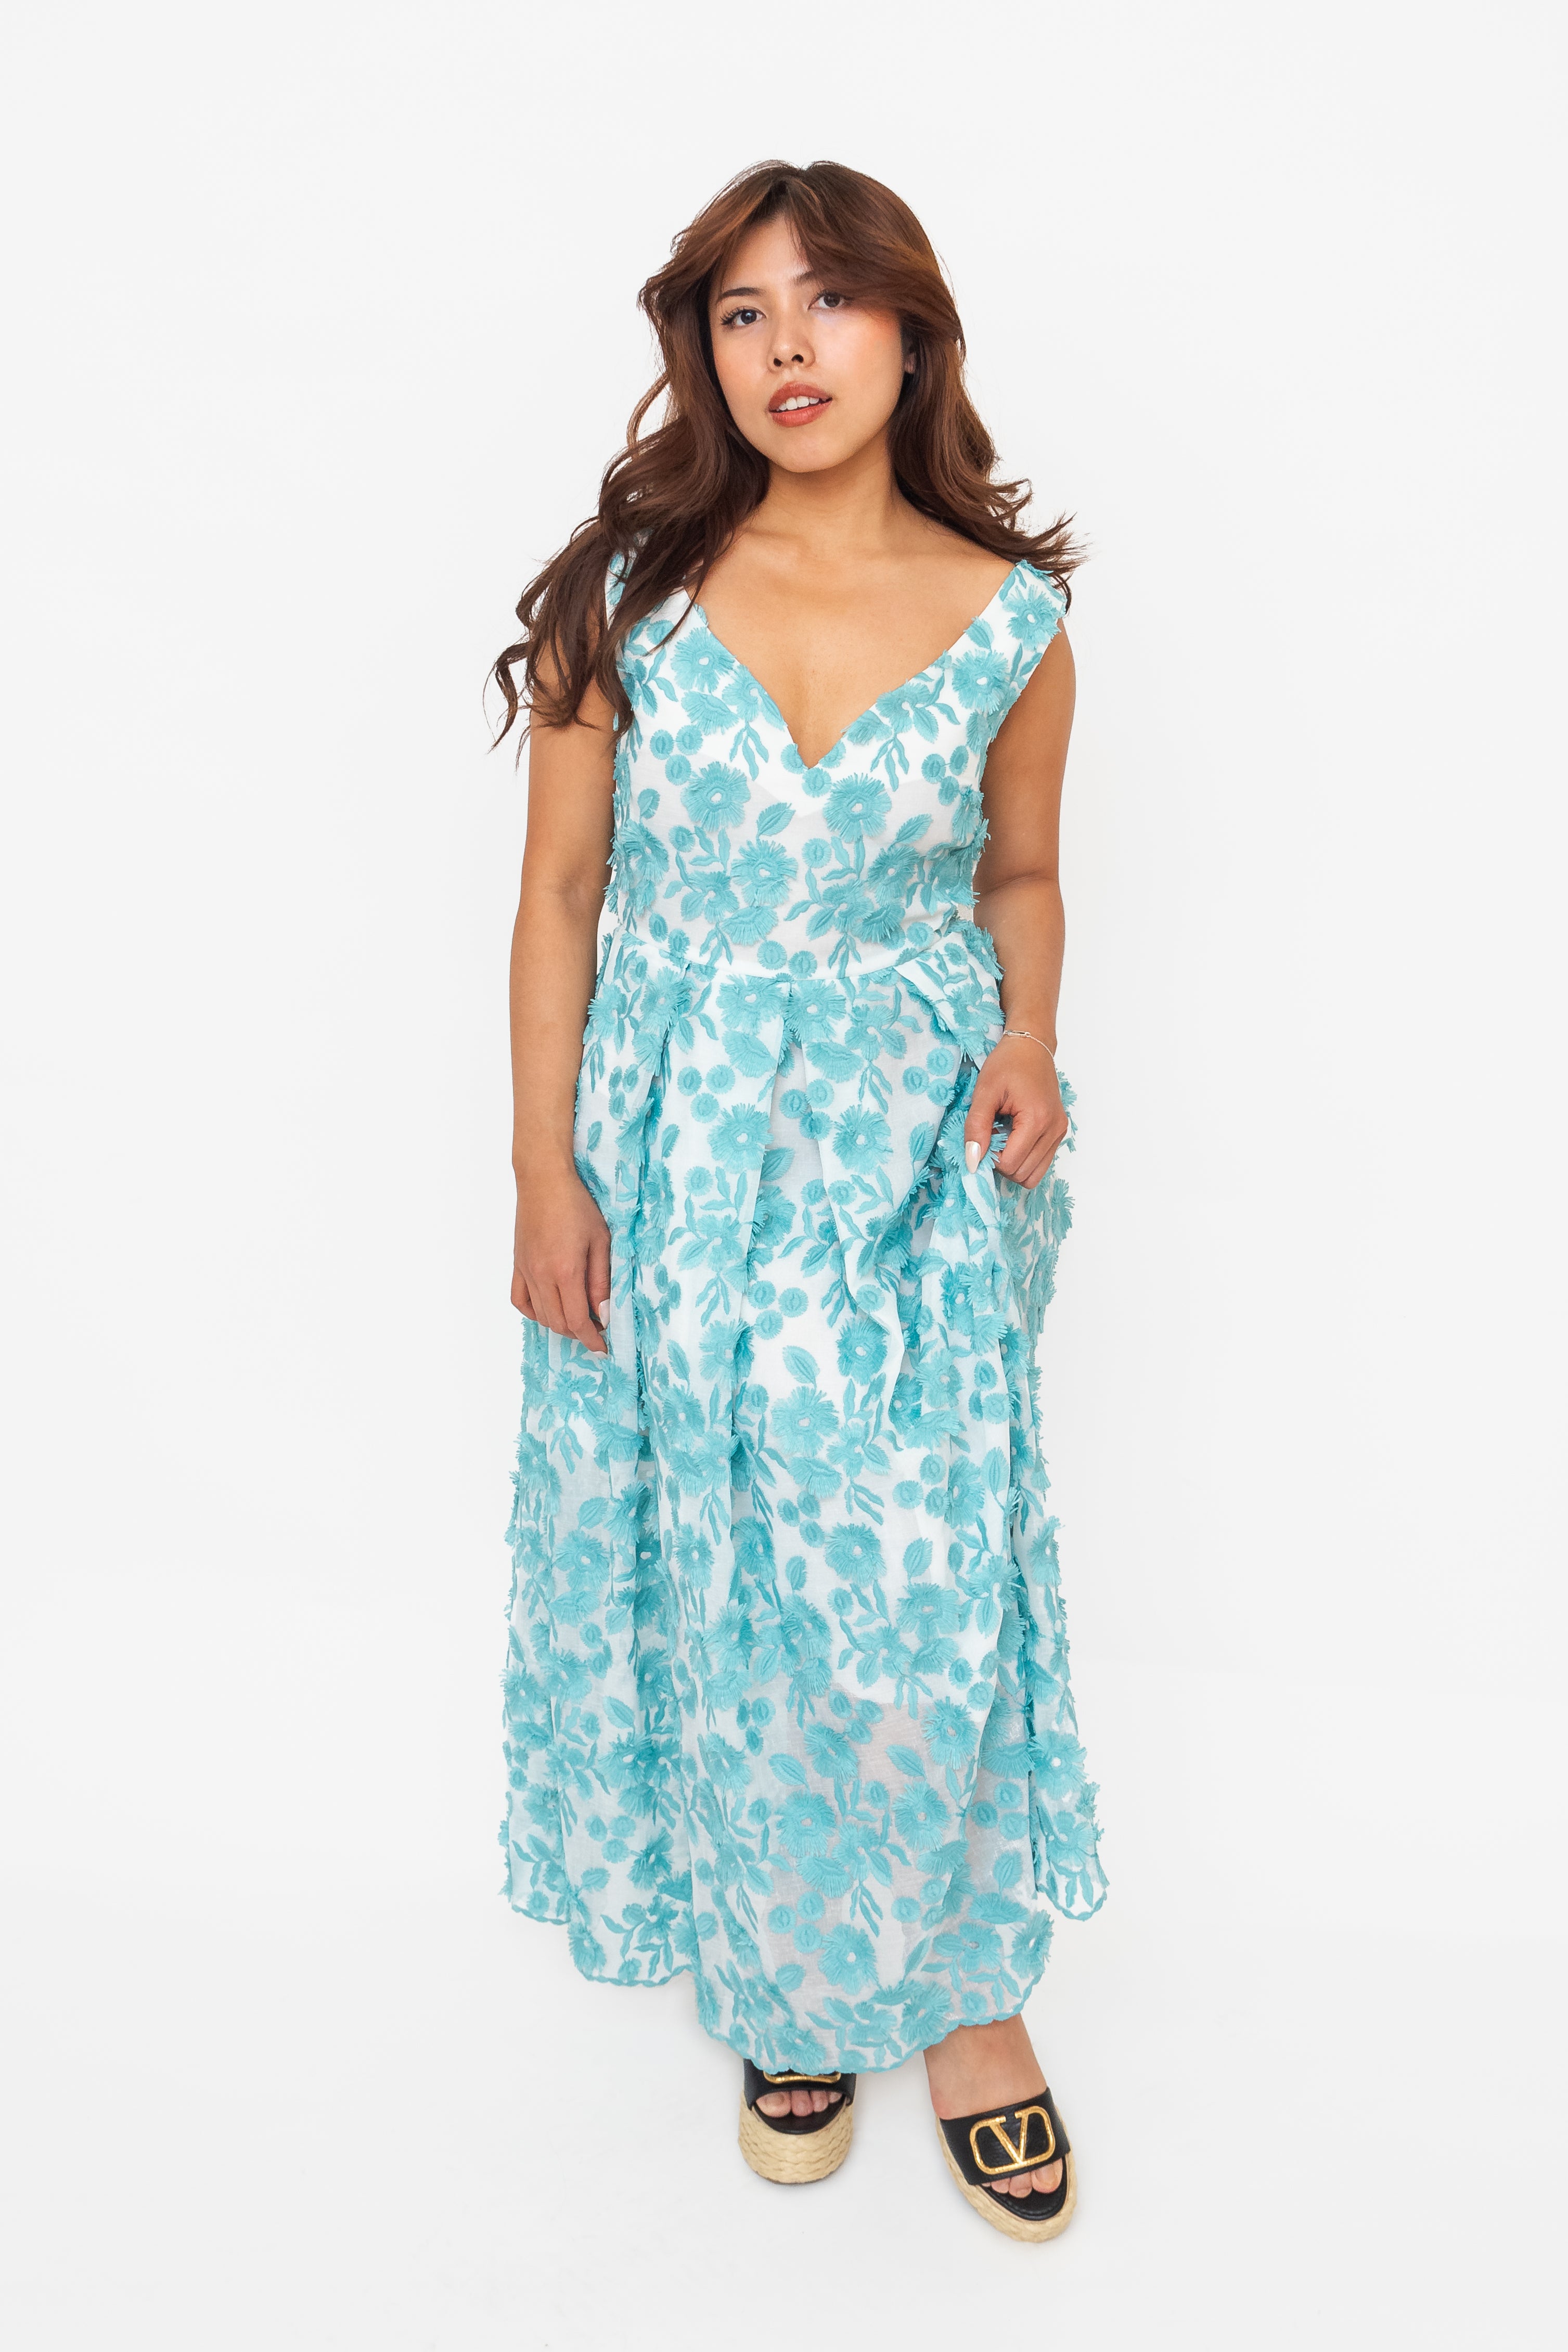 Blue Floral Applique A-line Dress